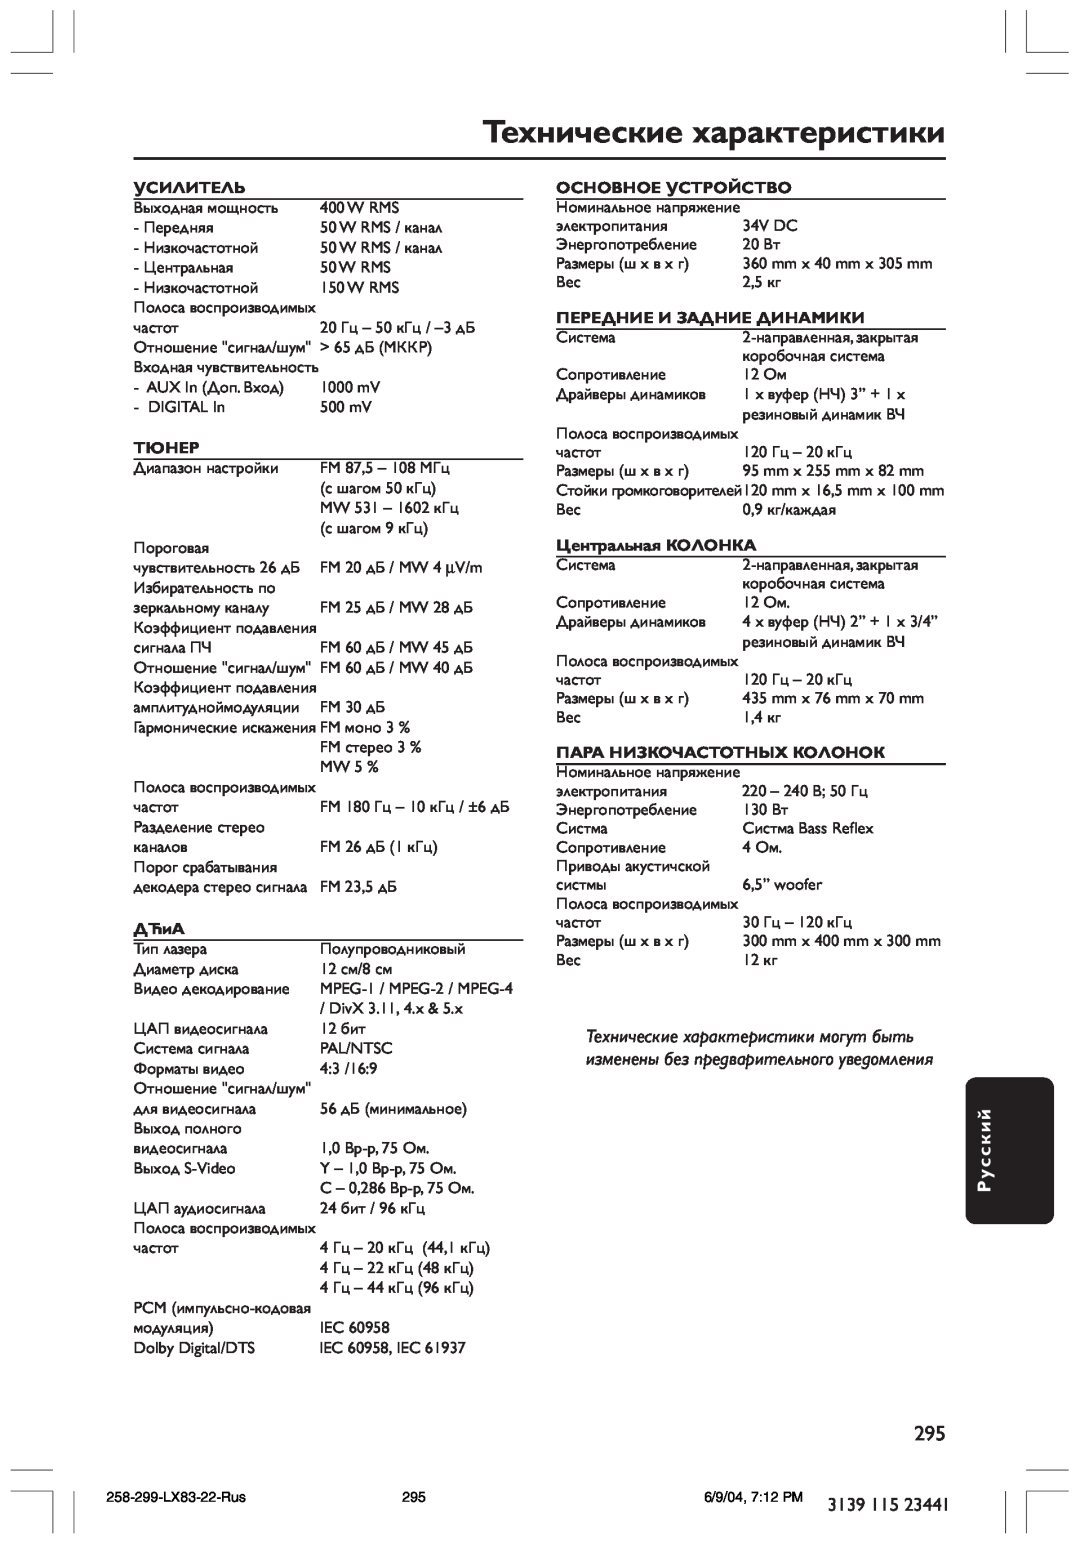 Philips LX8300SA Технические характеристики, Русский, Усилитель, Тюнер, ДЋиА, Основное Устройство, Центральная КОЛОНКА 